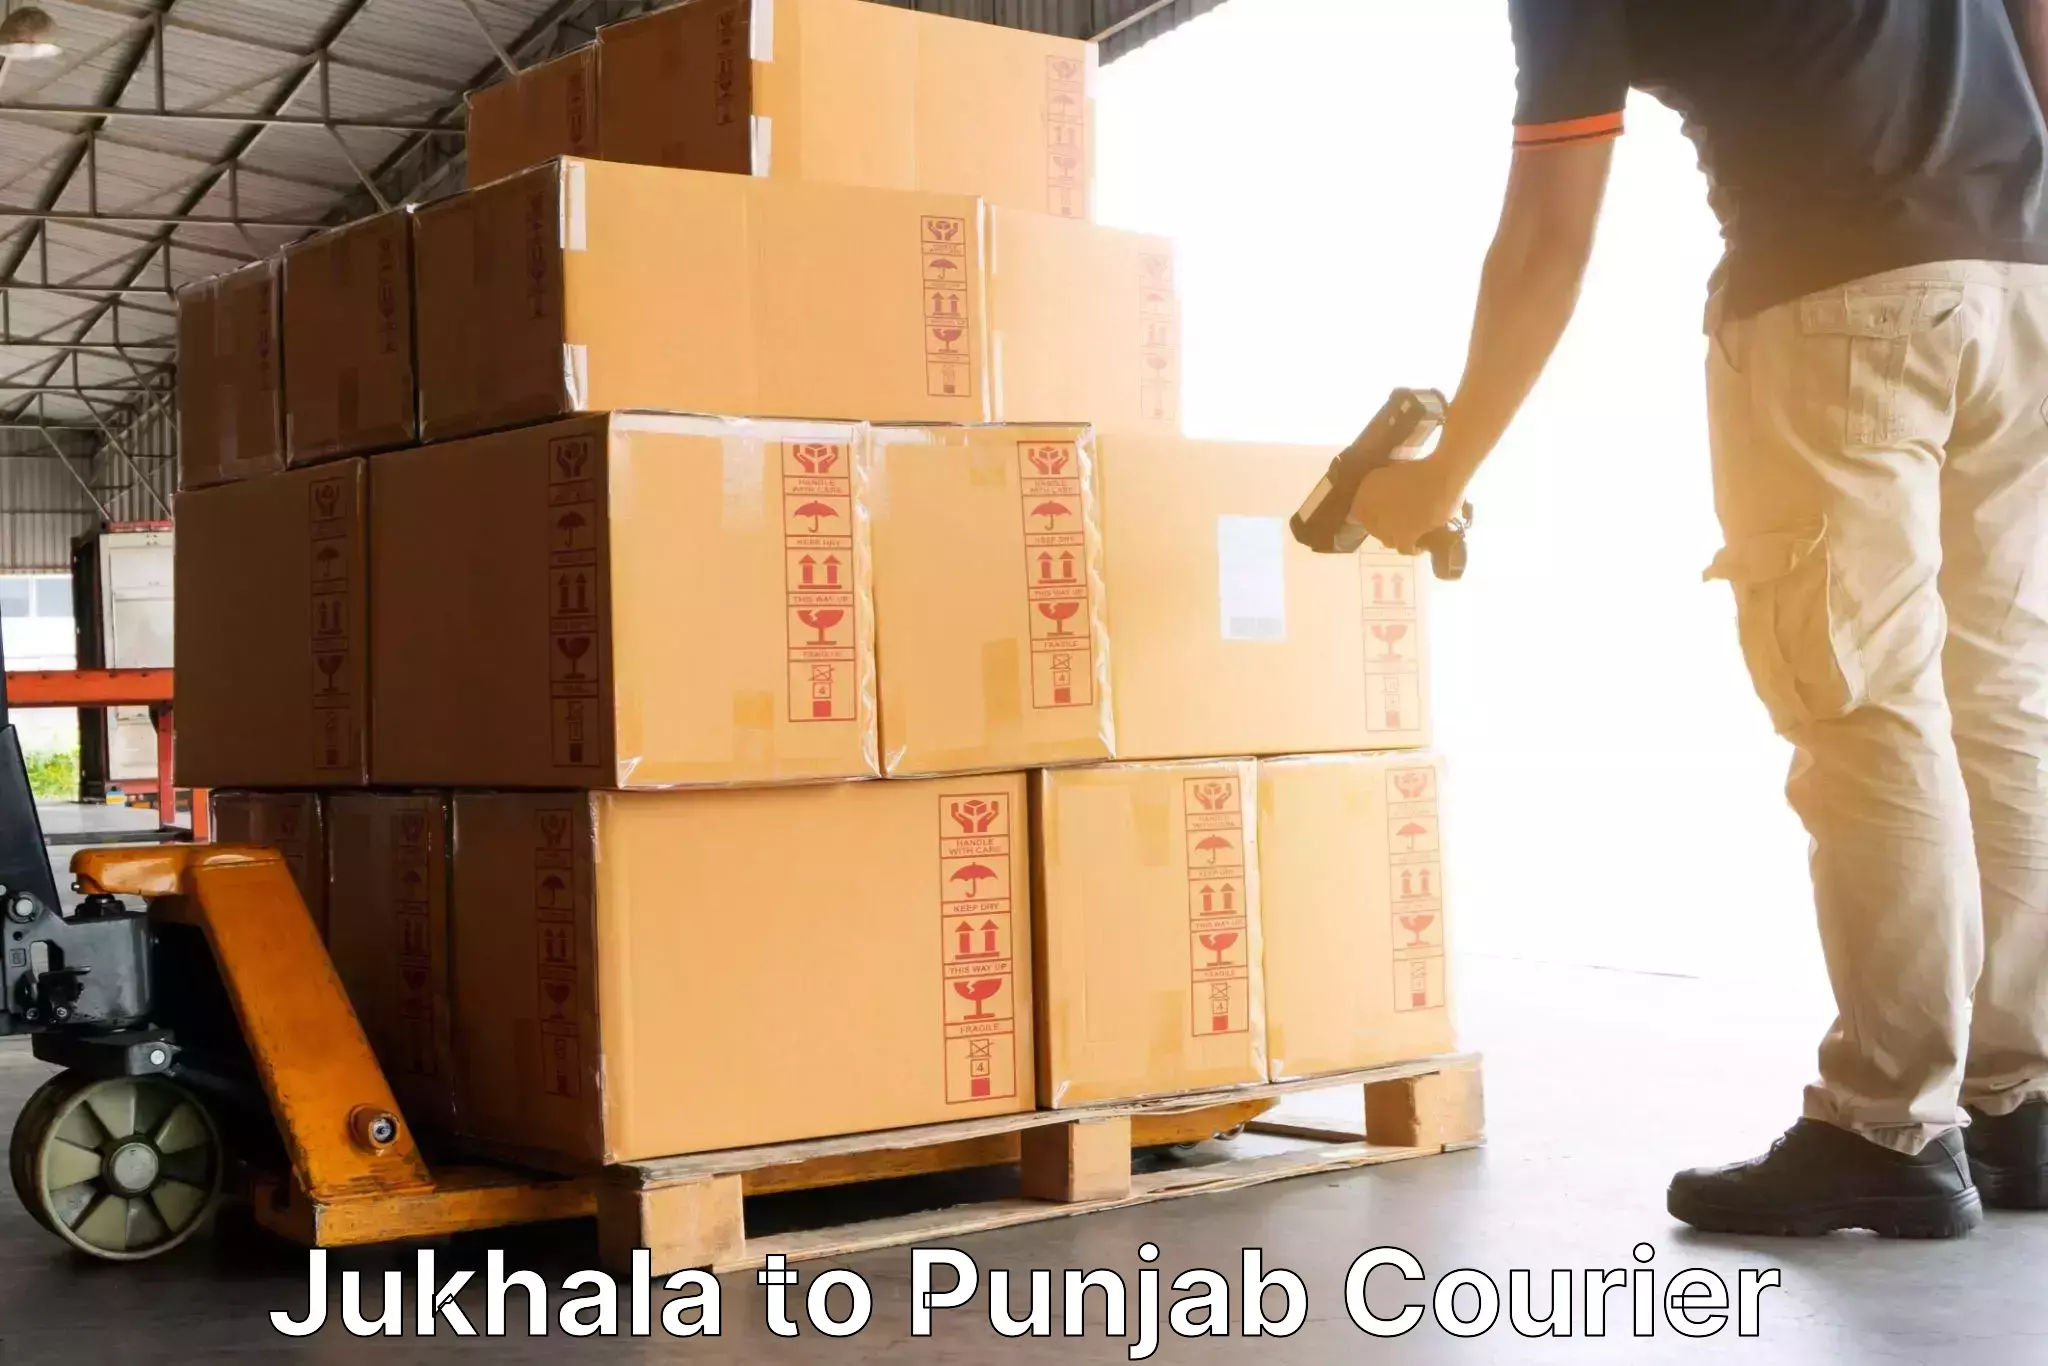 Digital courier platforms Jukhala to Machhiwara